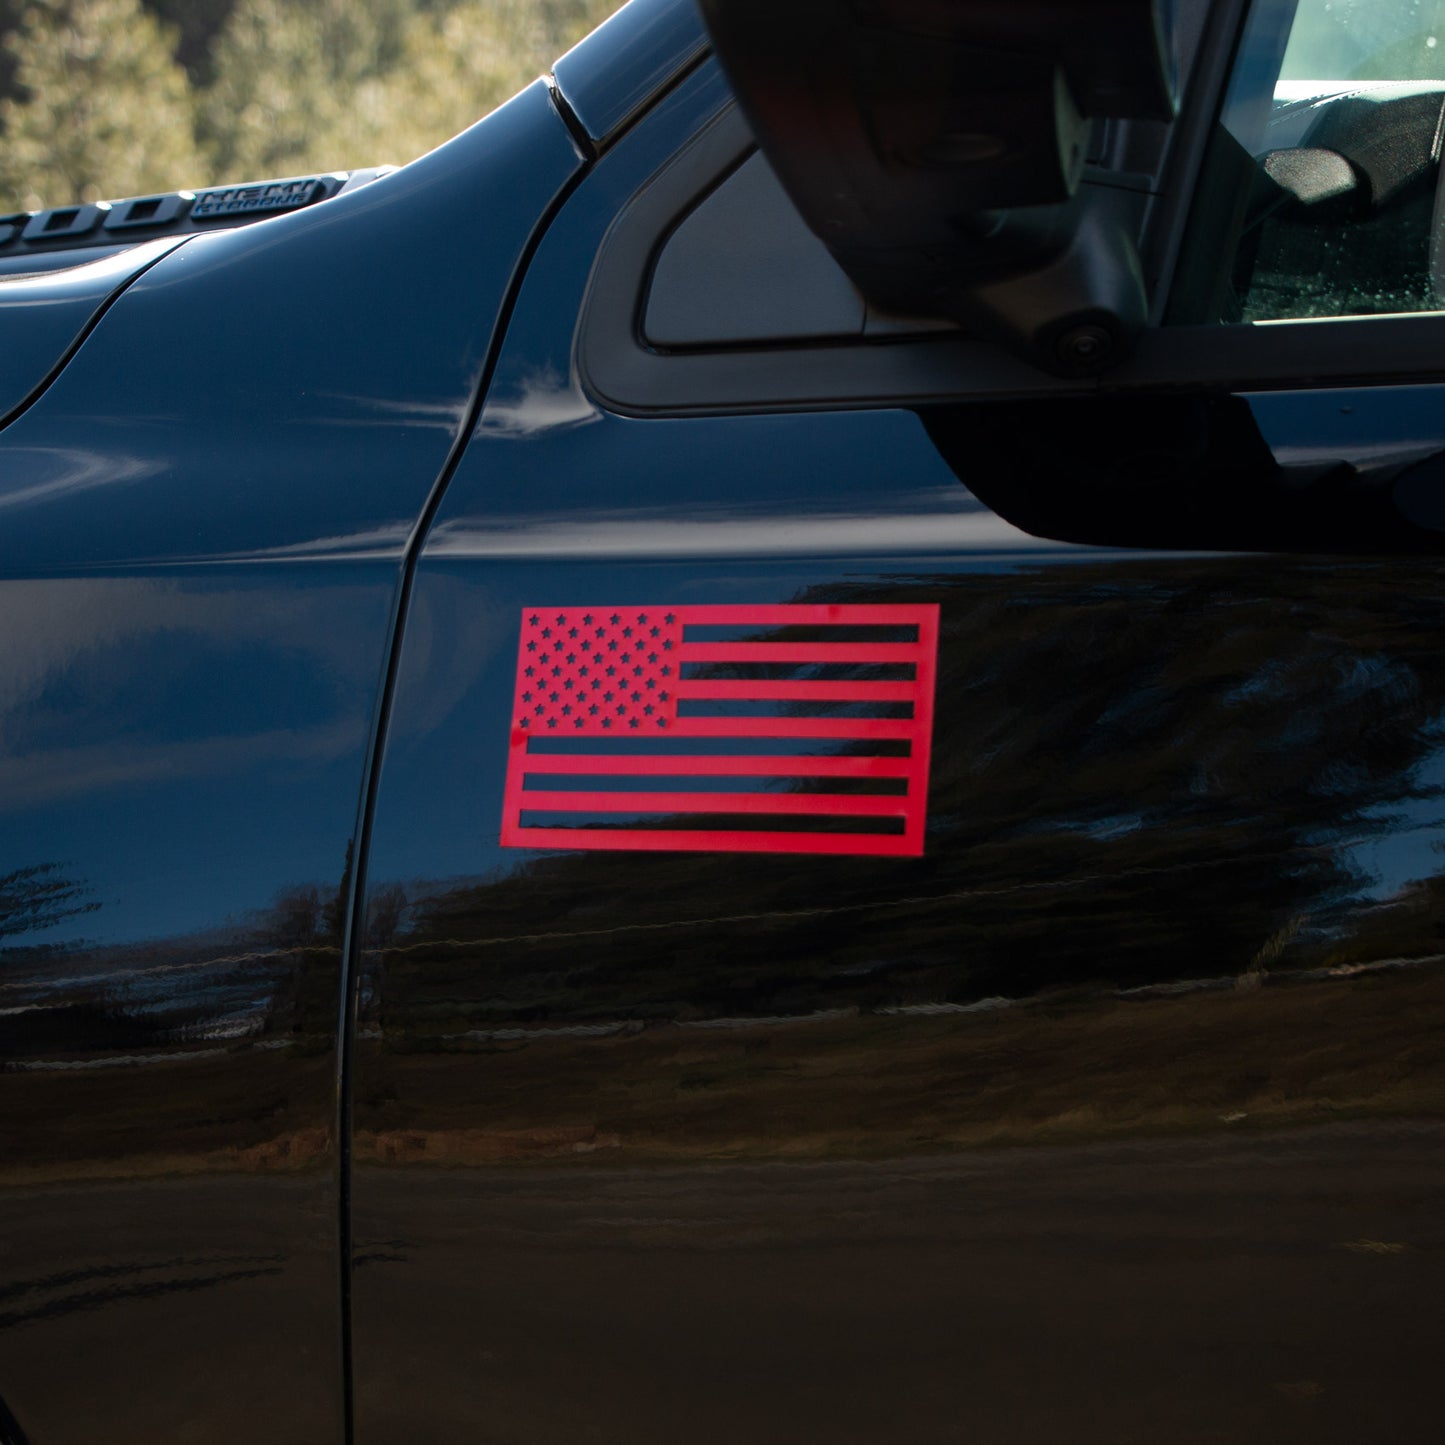 USA Flag Magnets